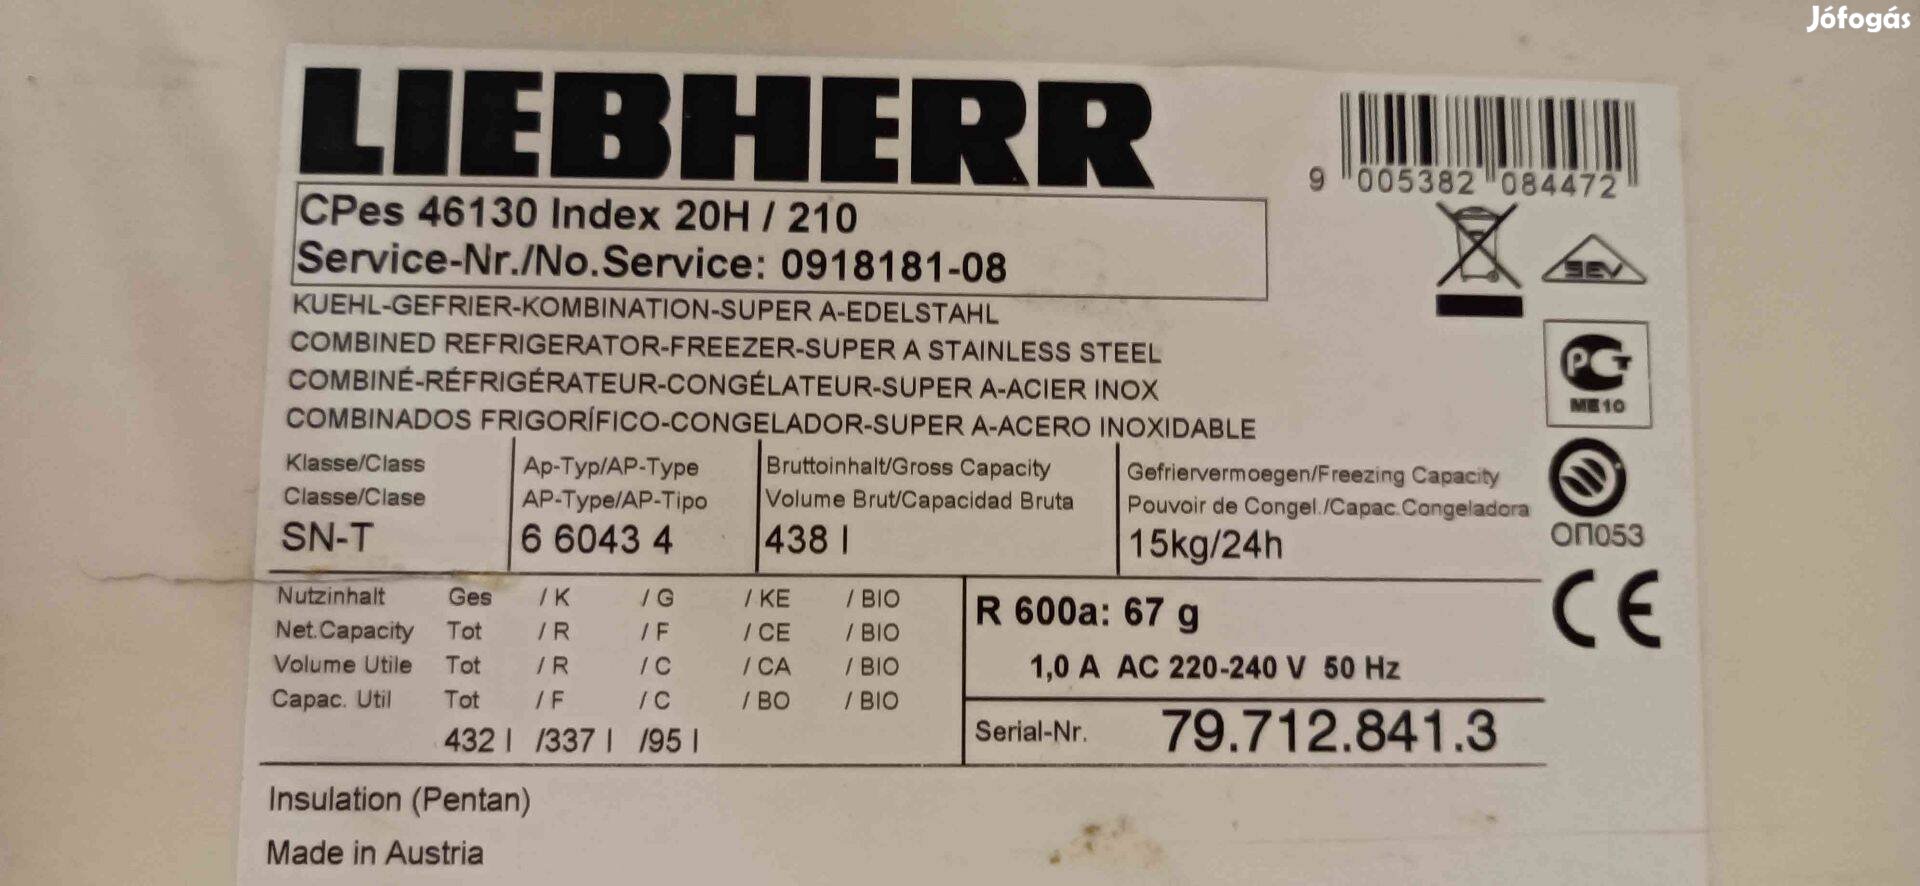 Liebherr Cpes 46130 hűtő-fagyasztó alkatrésznek